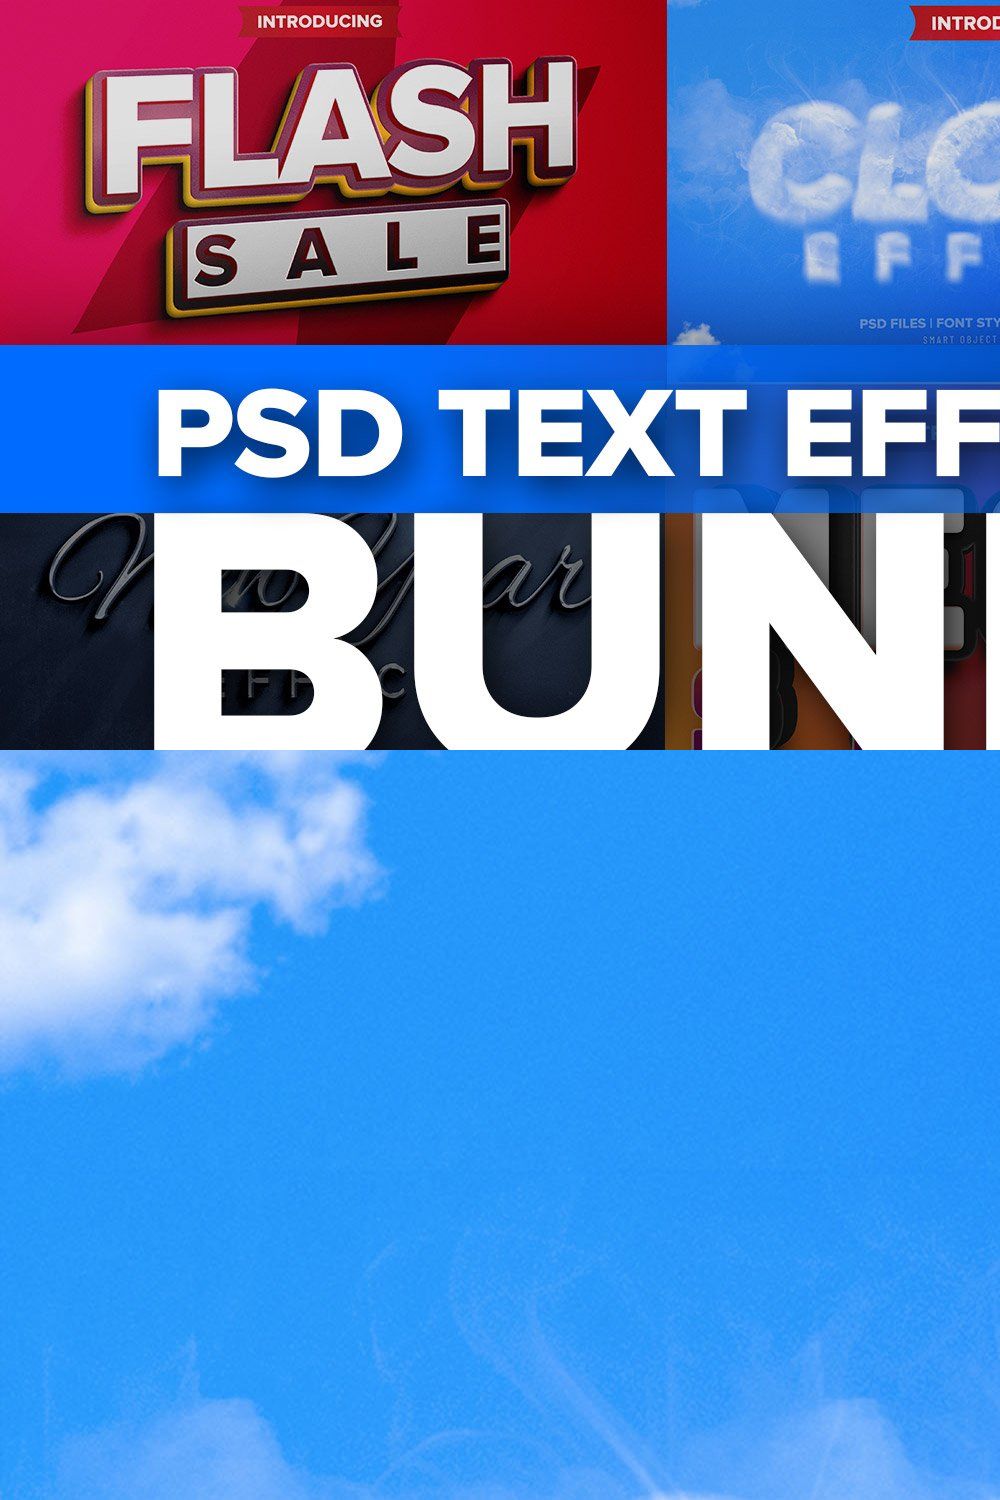 Photoshop 3D text effects BUNDLE 2 pinterest preview image.